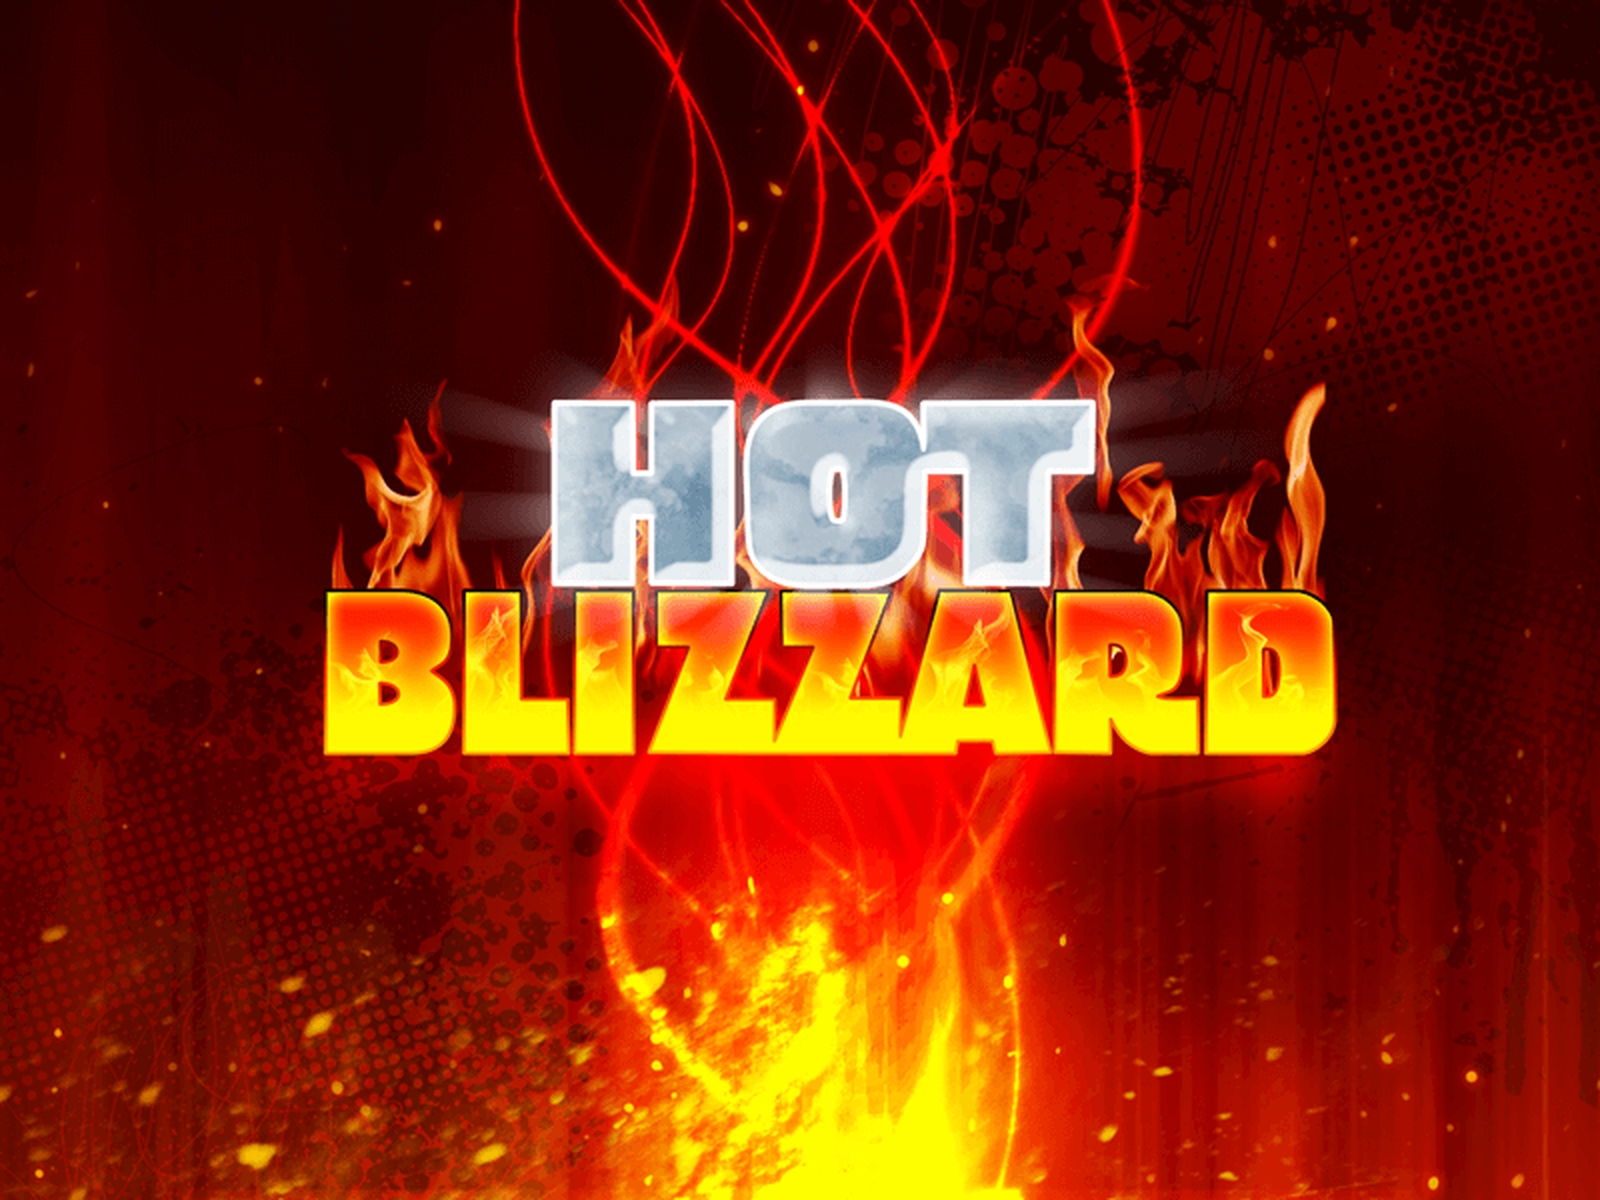 Hot Blizzard demo